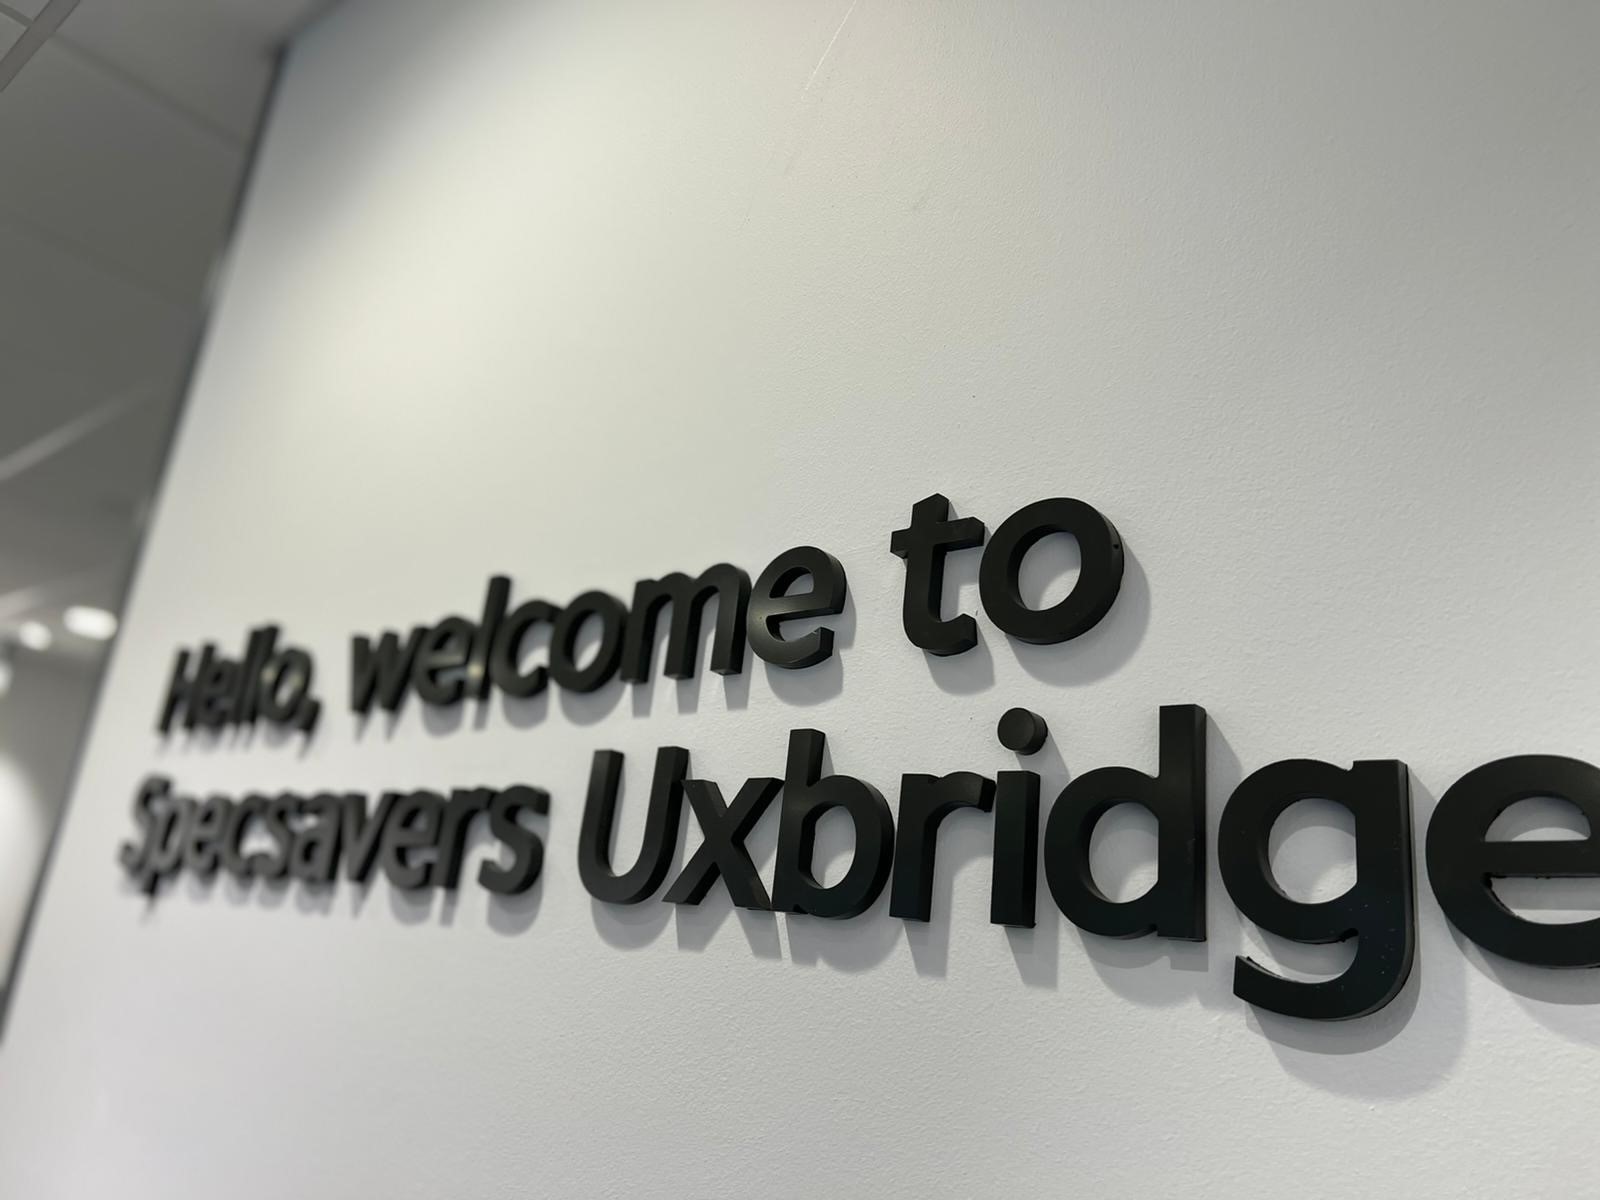 Specsavers Uxbridge Specsavers Opticians and Audiologists - Uxbridge Uxbridge 01895 256010